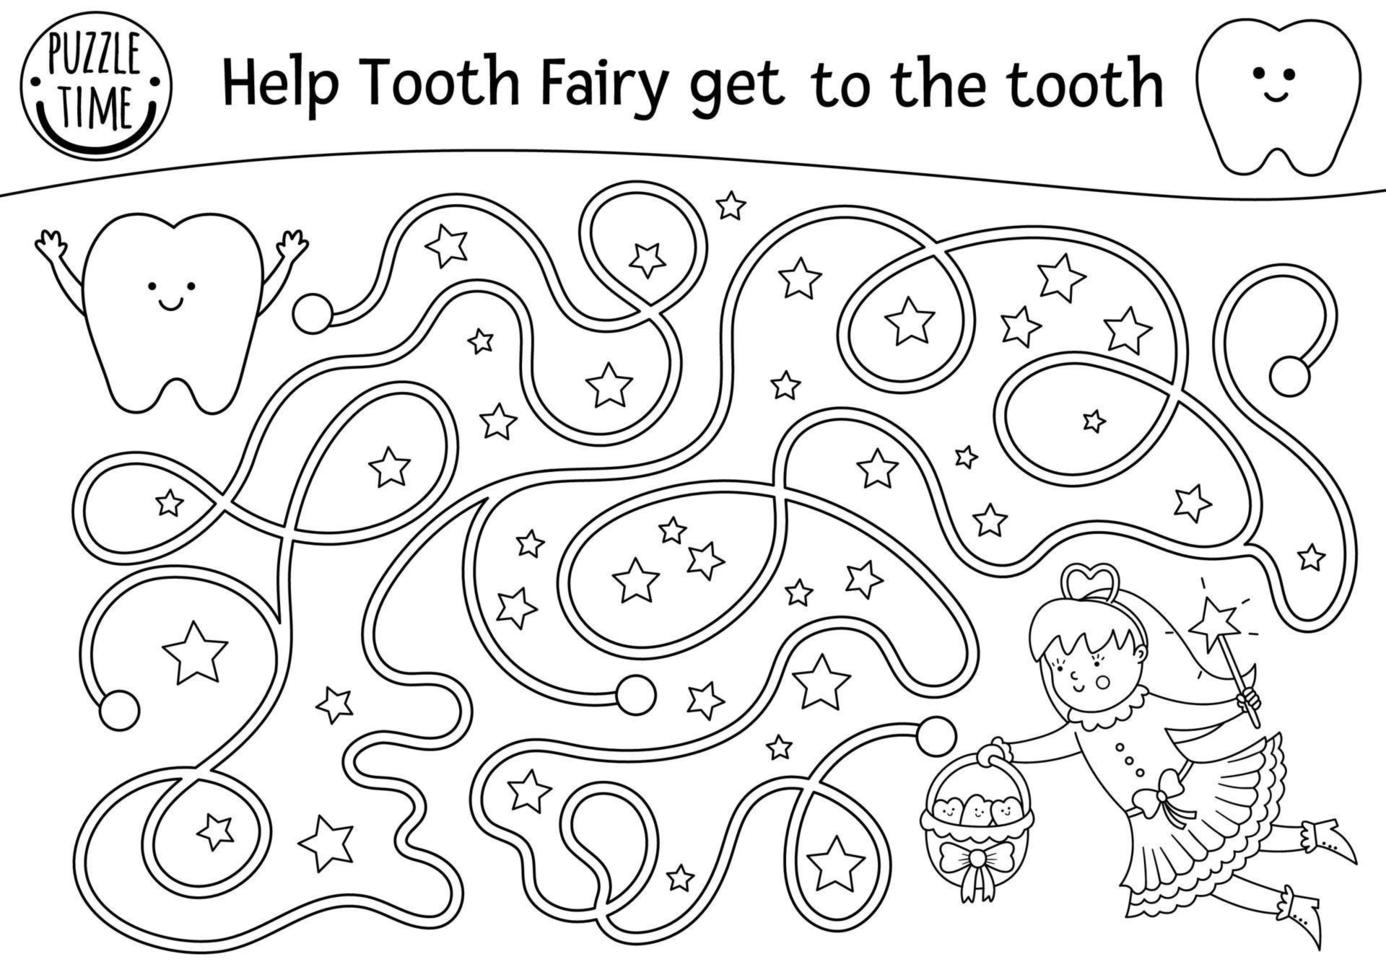 labyrinthe de soins dentaires noir et blanc pour les enfants. activité de clinique de dentiste de ligne préscolaire ou page de coloriage. aidez la fée des dents à atteindre la dent. labyrinthe d'hygiène buccale pour les enfants vecteur